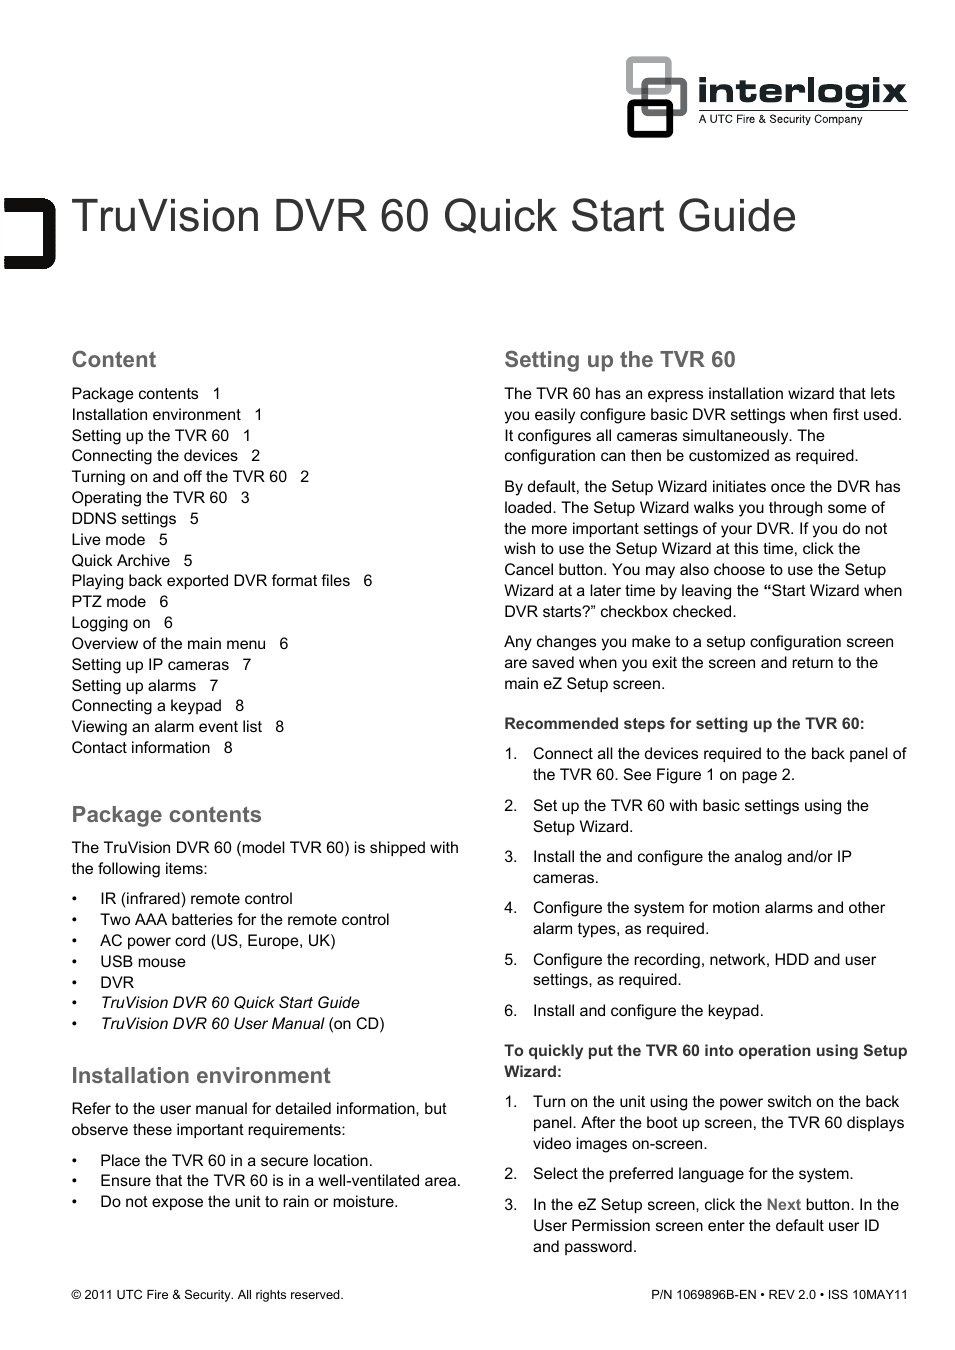 DVR 60 Quick Start